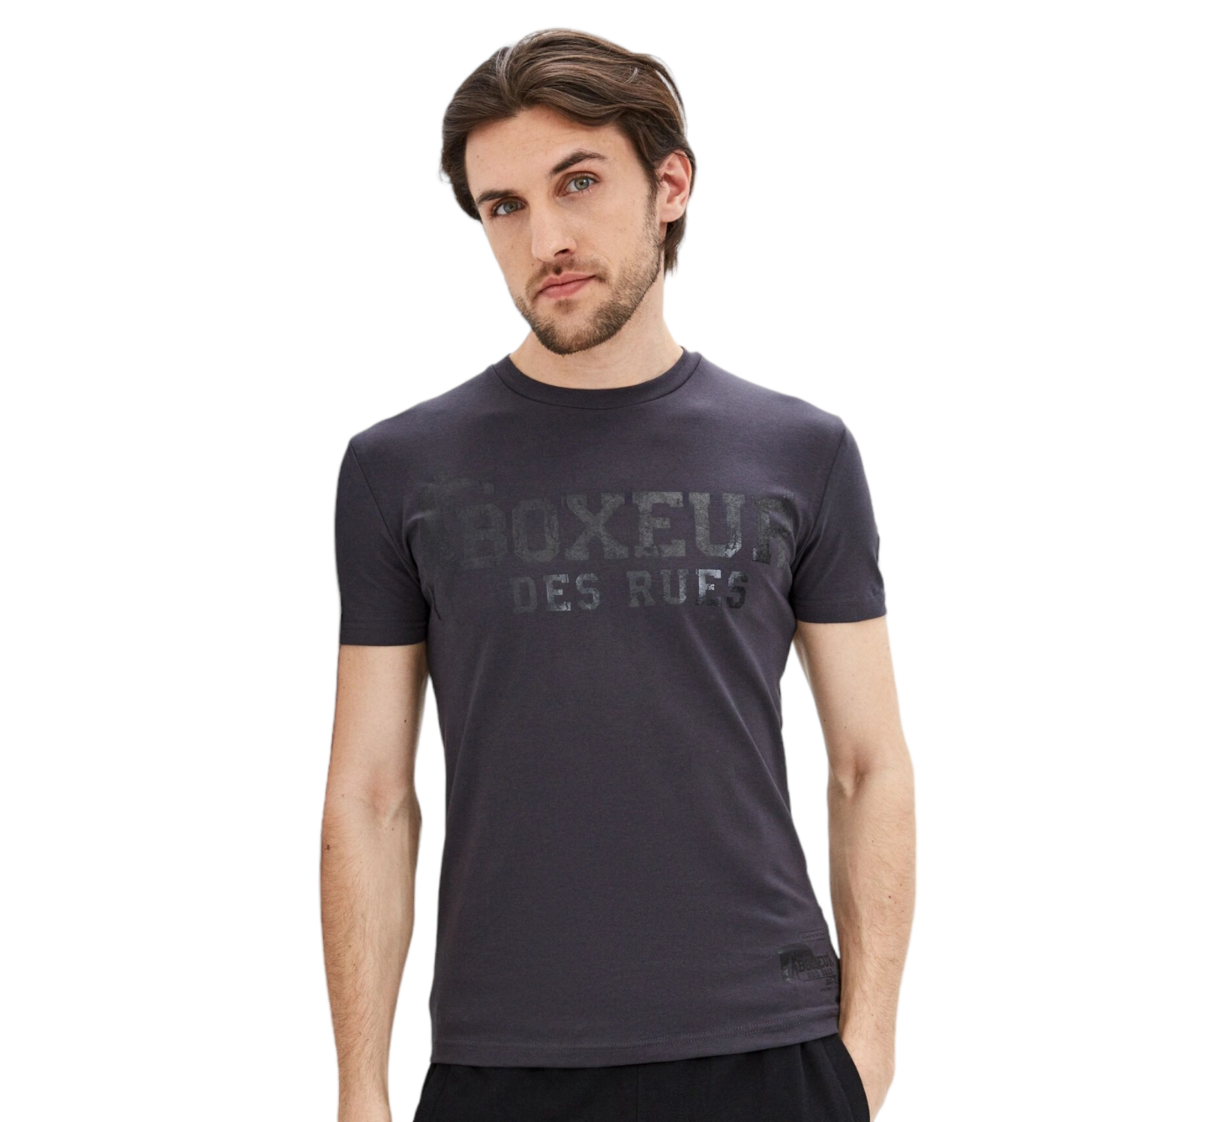 Футболка "Boxeur", Men's T-shirt, Antacite, Boxeur Des Rues